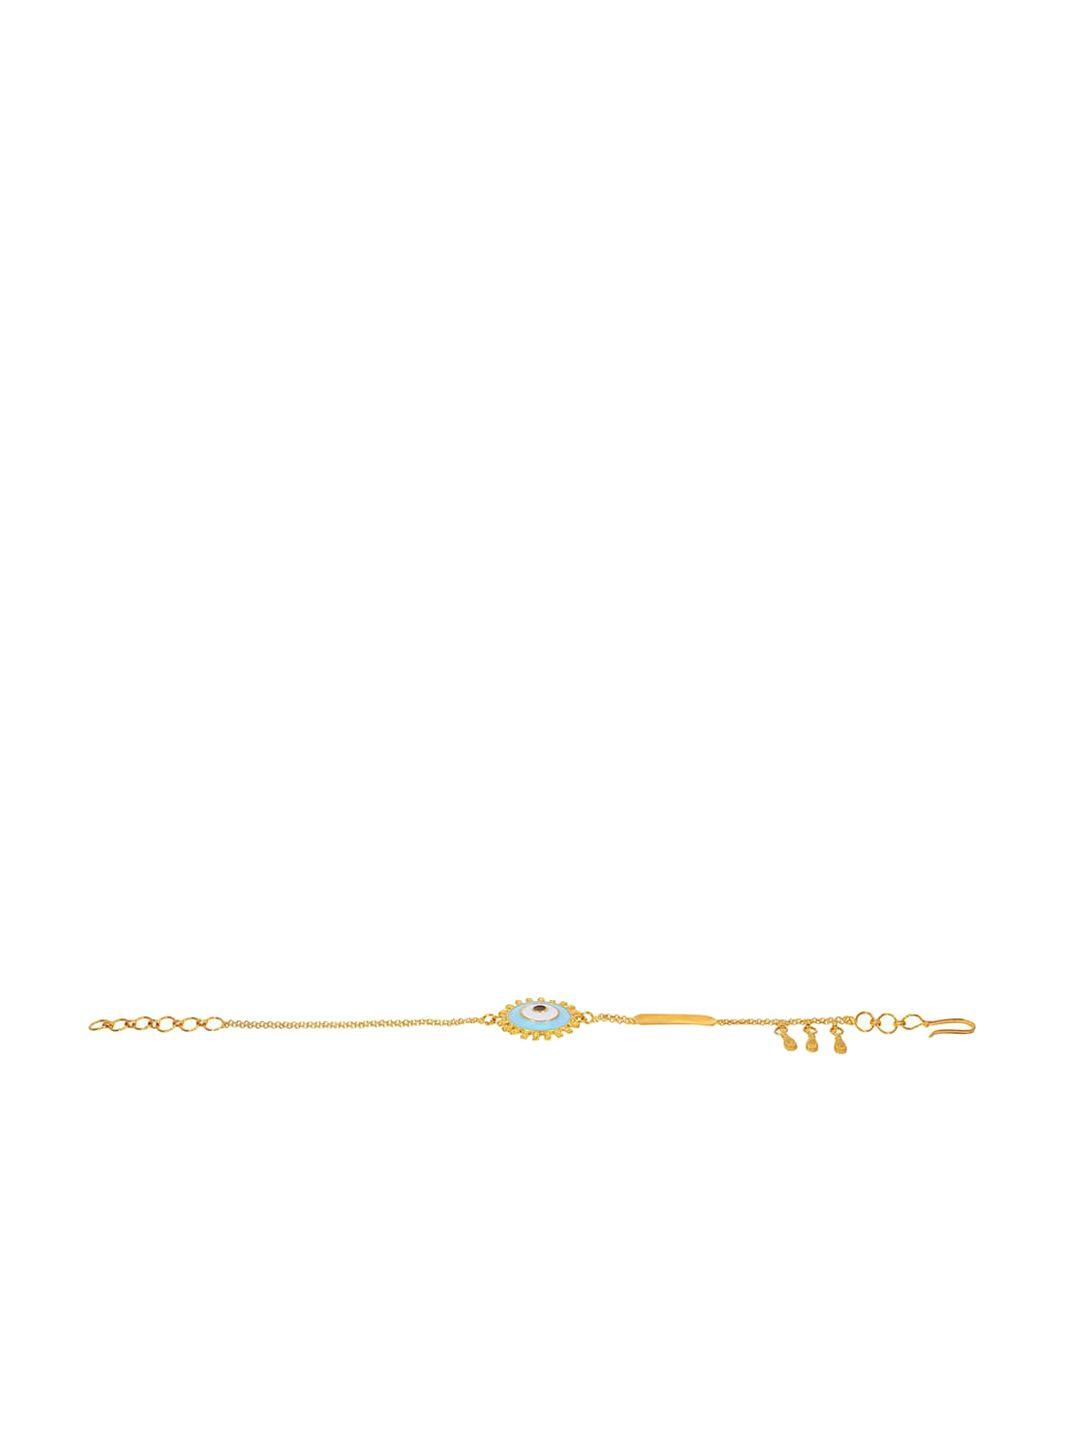 senco guardian vision 22kt gold bracelet-4.3gm